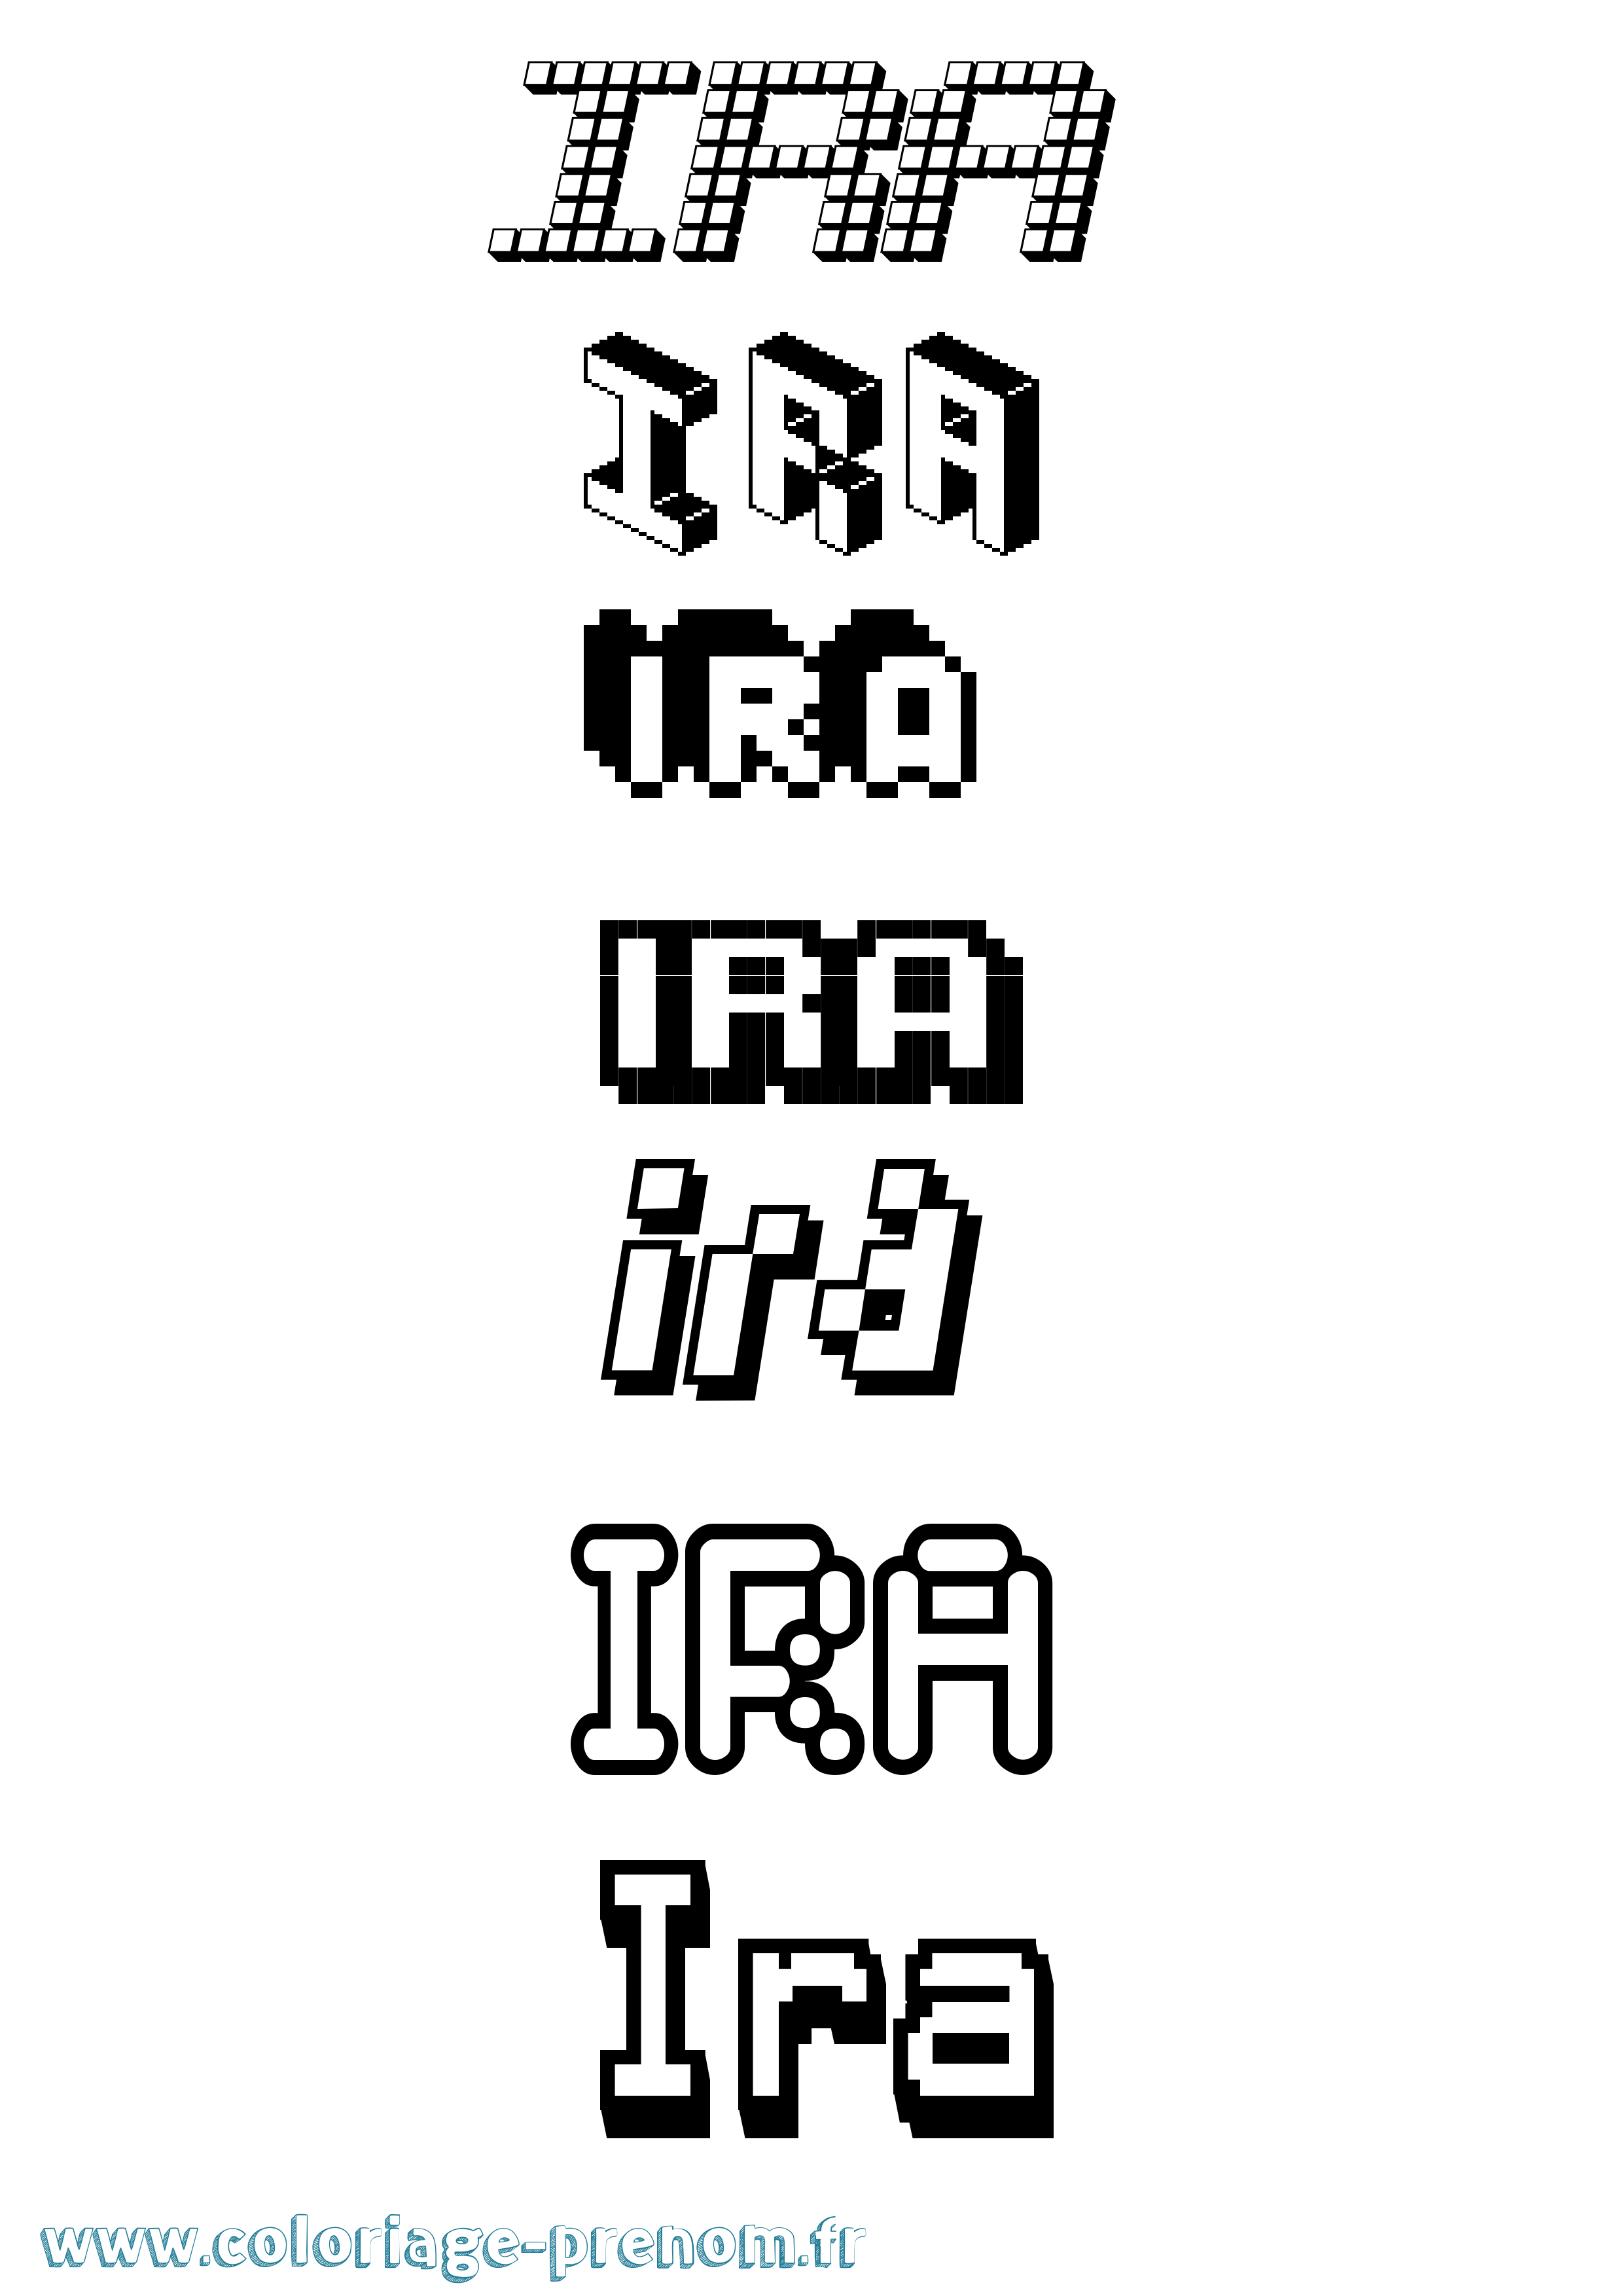 Coloriage prénom Ira Pixel